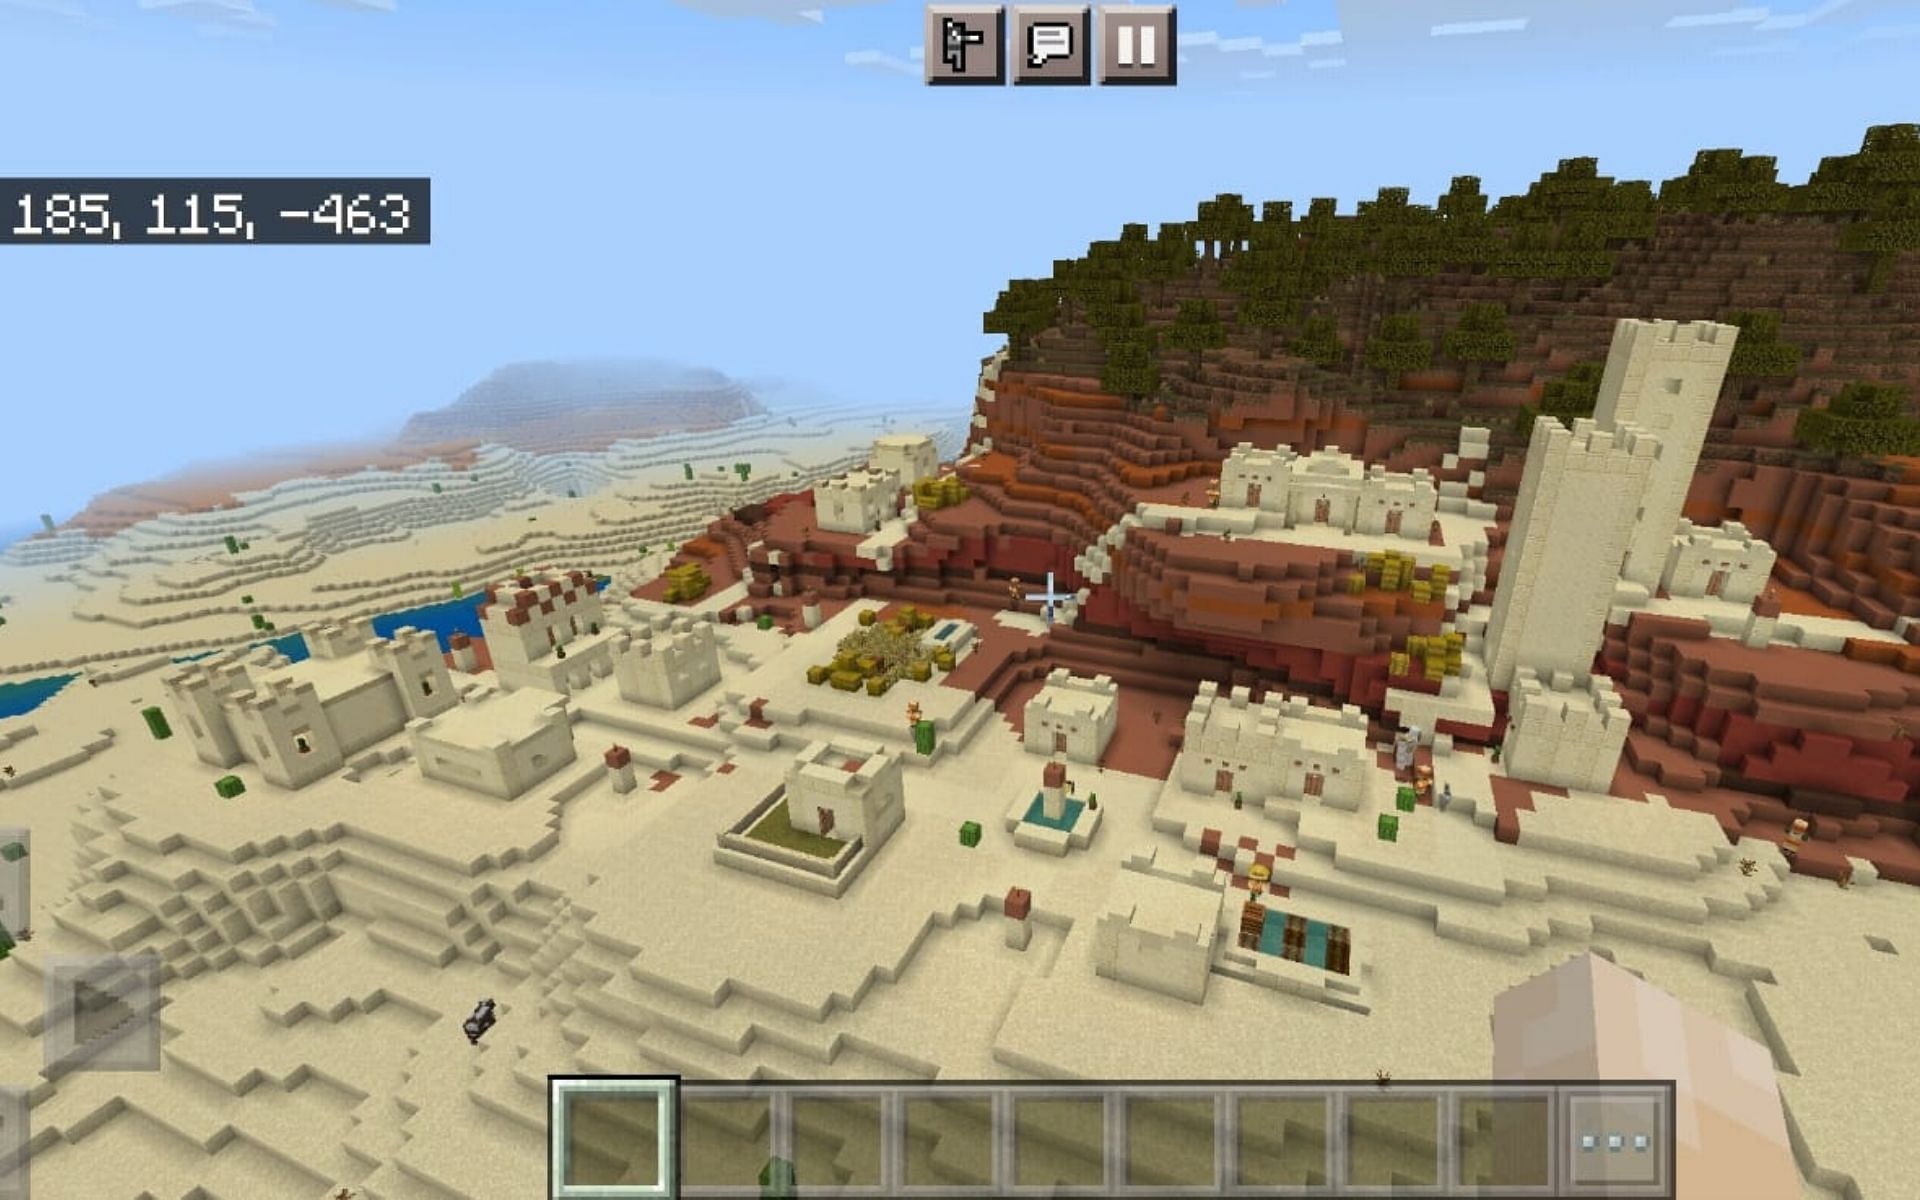 Village in the desert (Image via Minecraft)